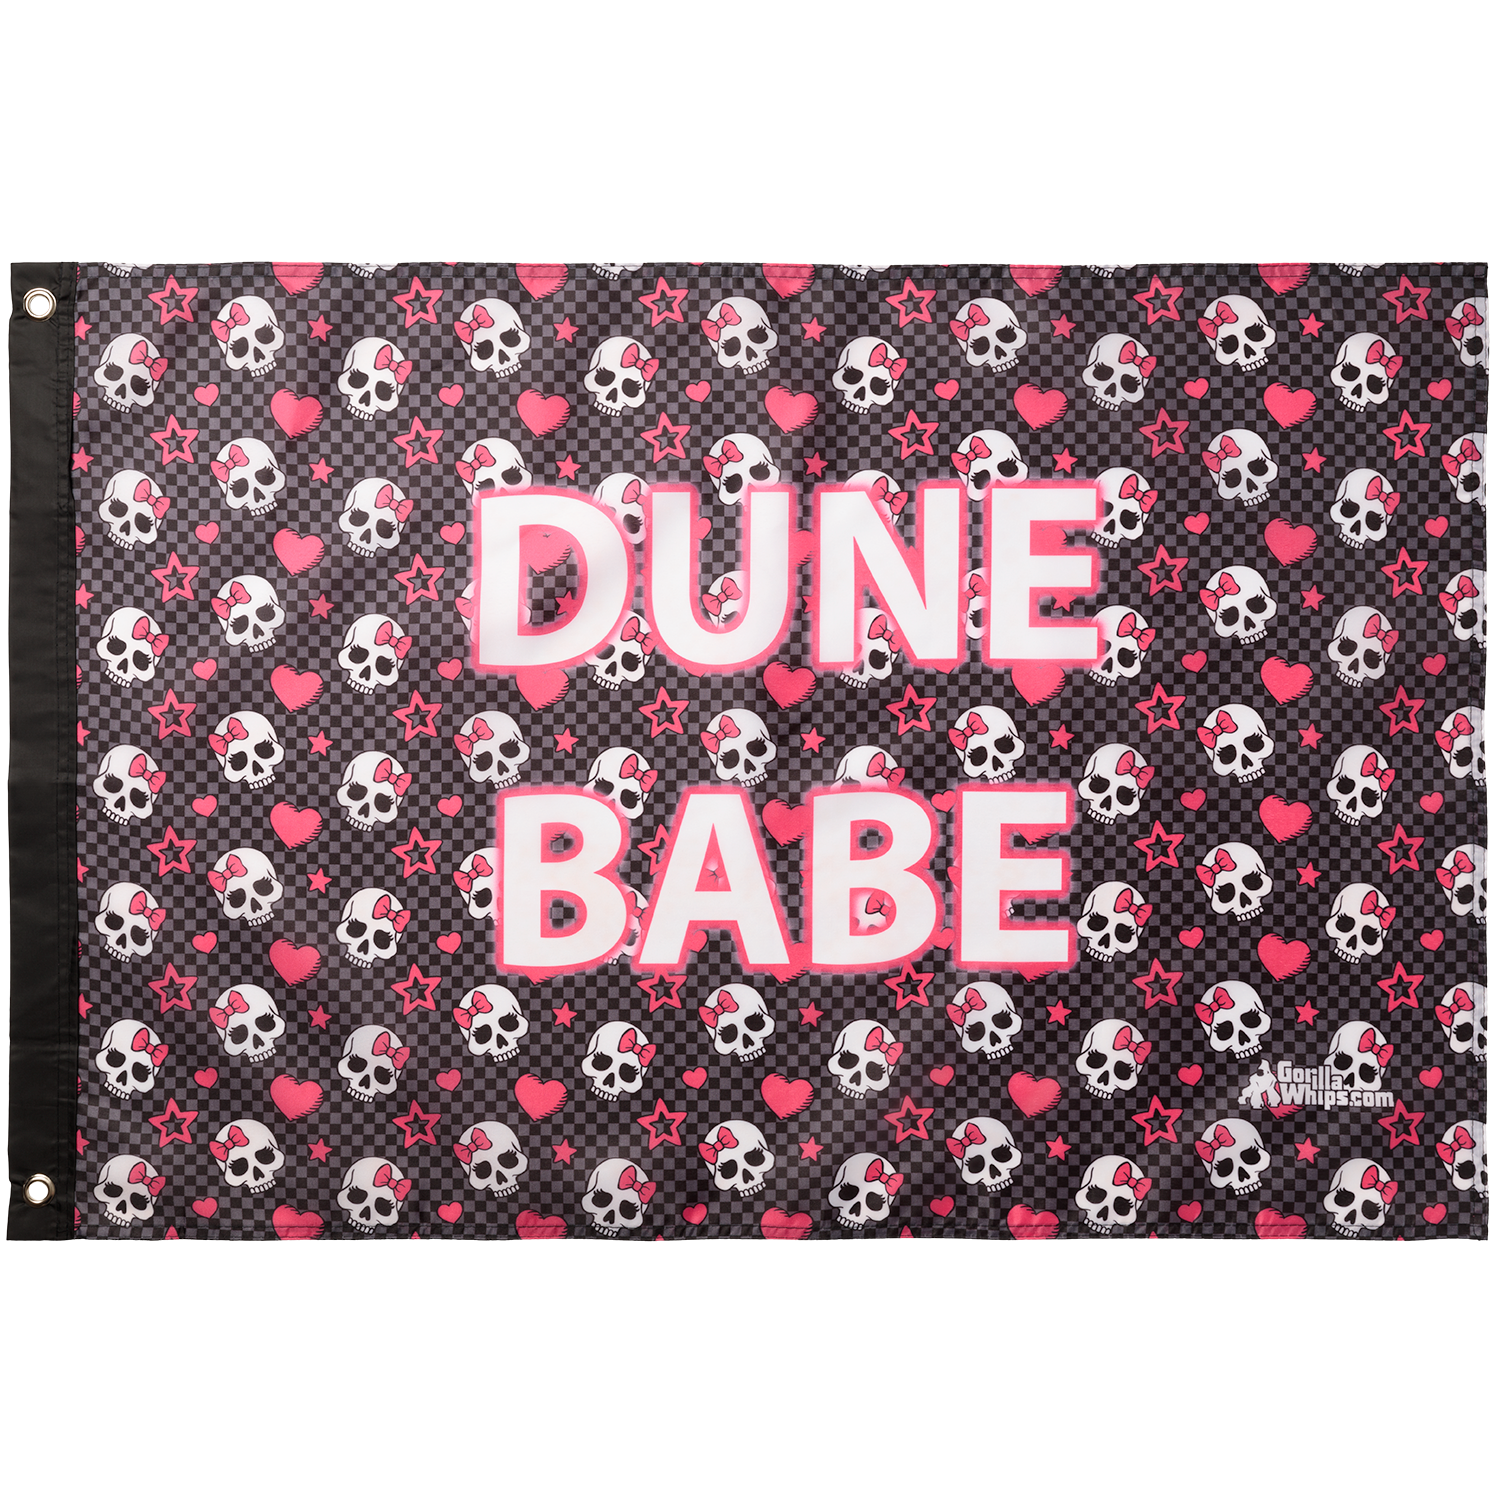 Dune Babe Skulls 2' x 3' Grommet Flag 